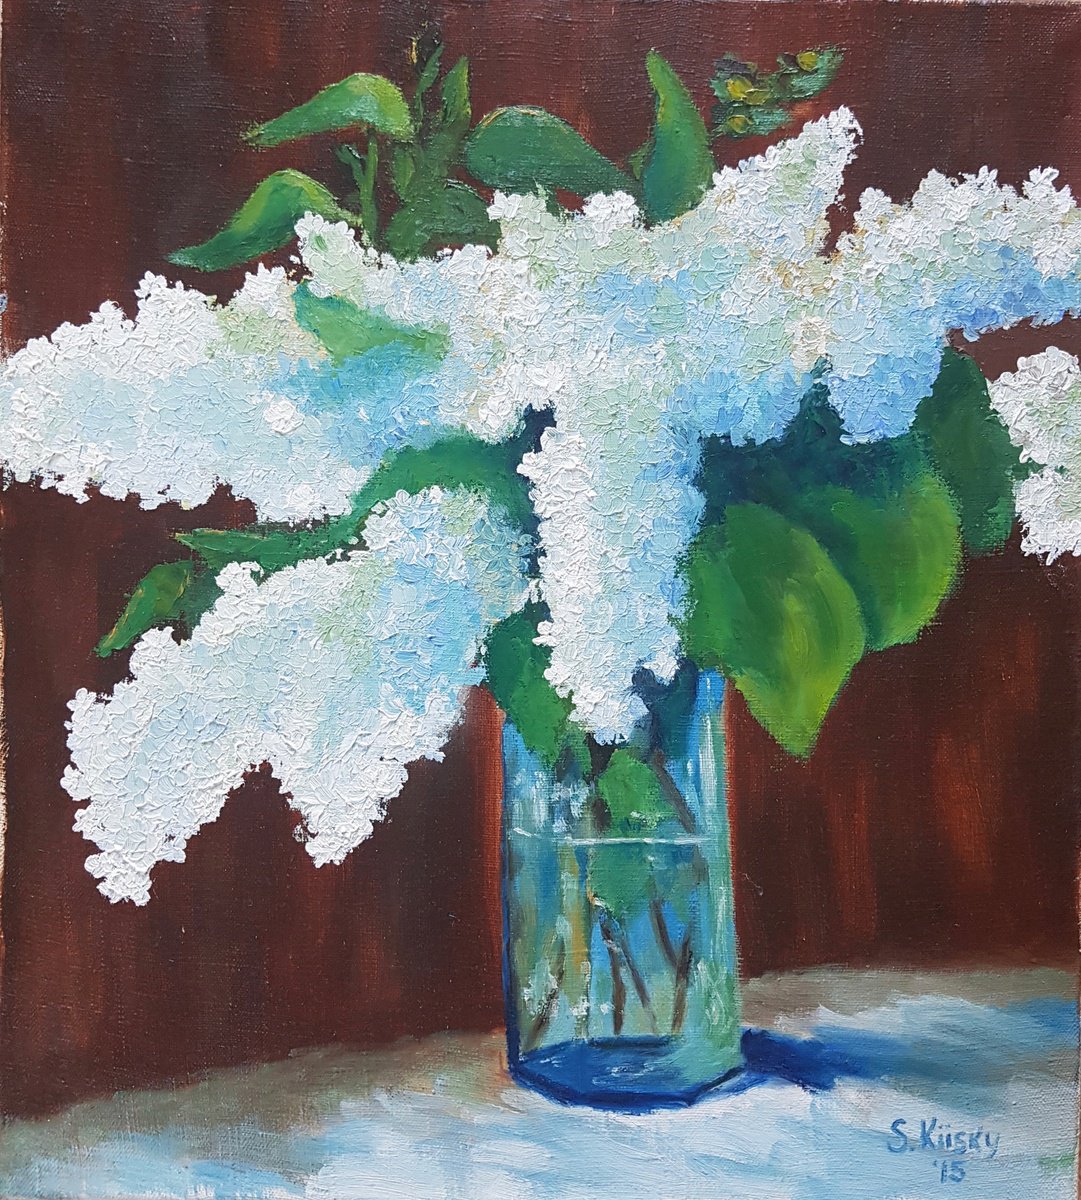 Lilac by Svetlana Grishkovec-Kiisky